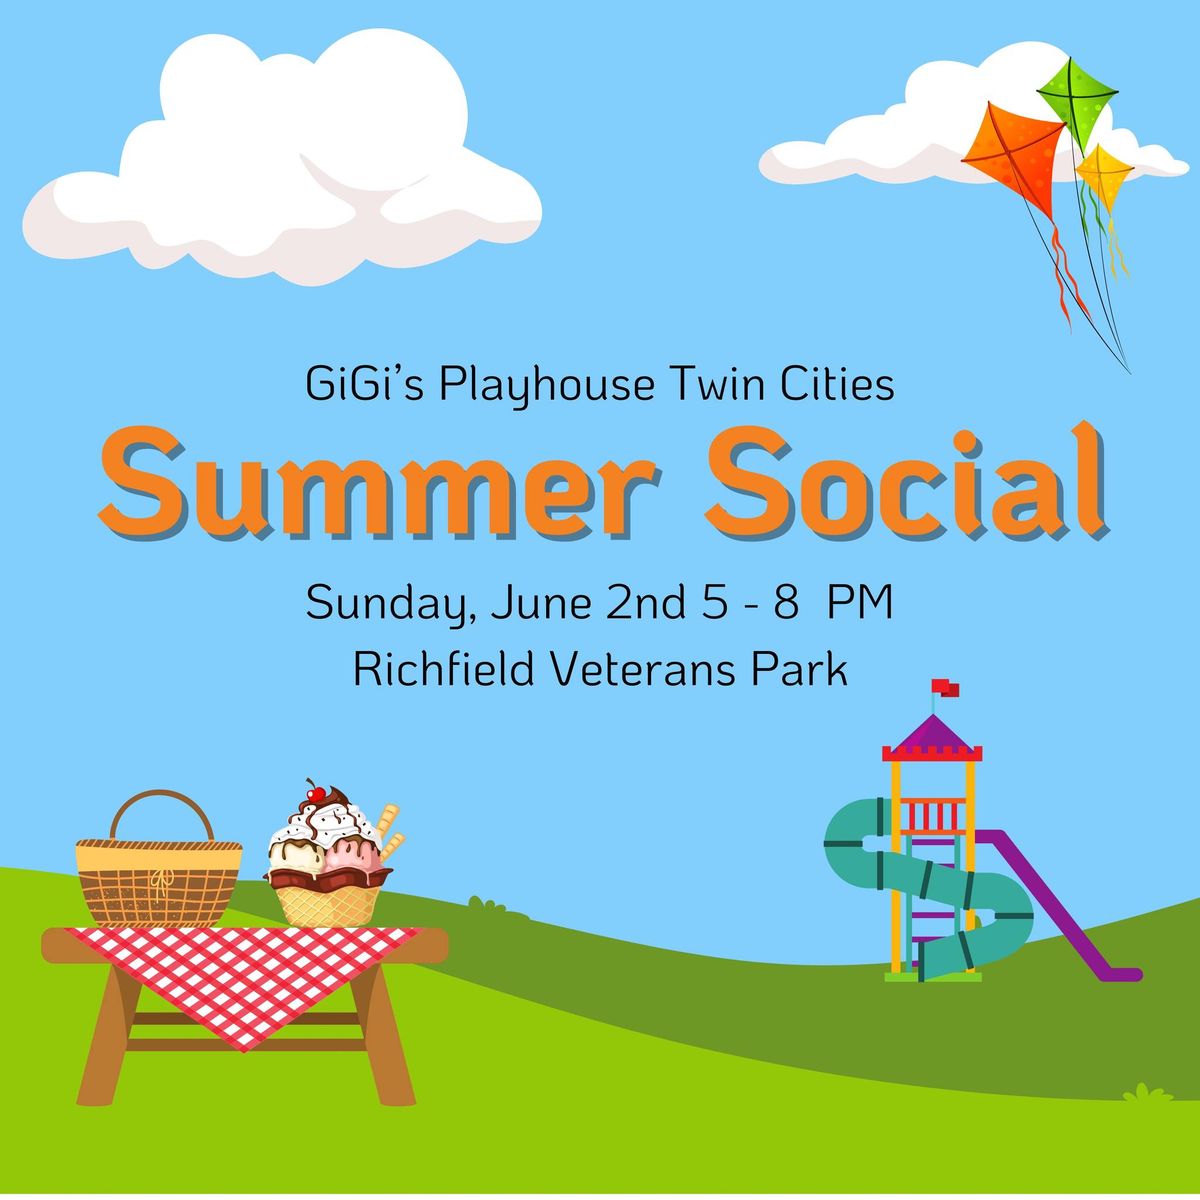 Summer Social at Richfield Veterans Park